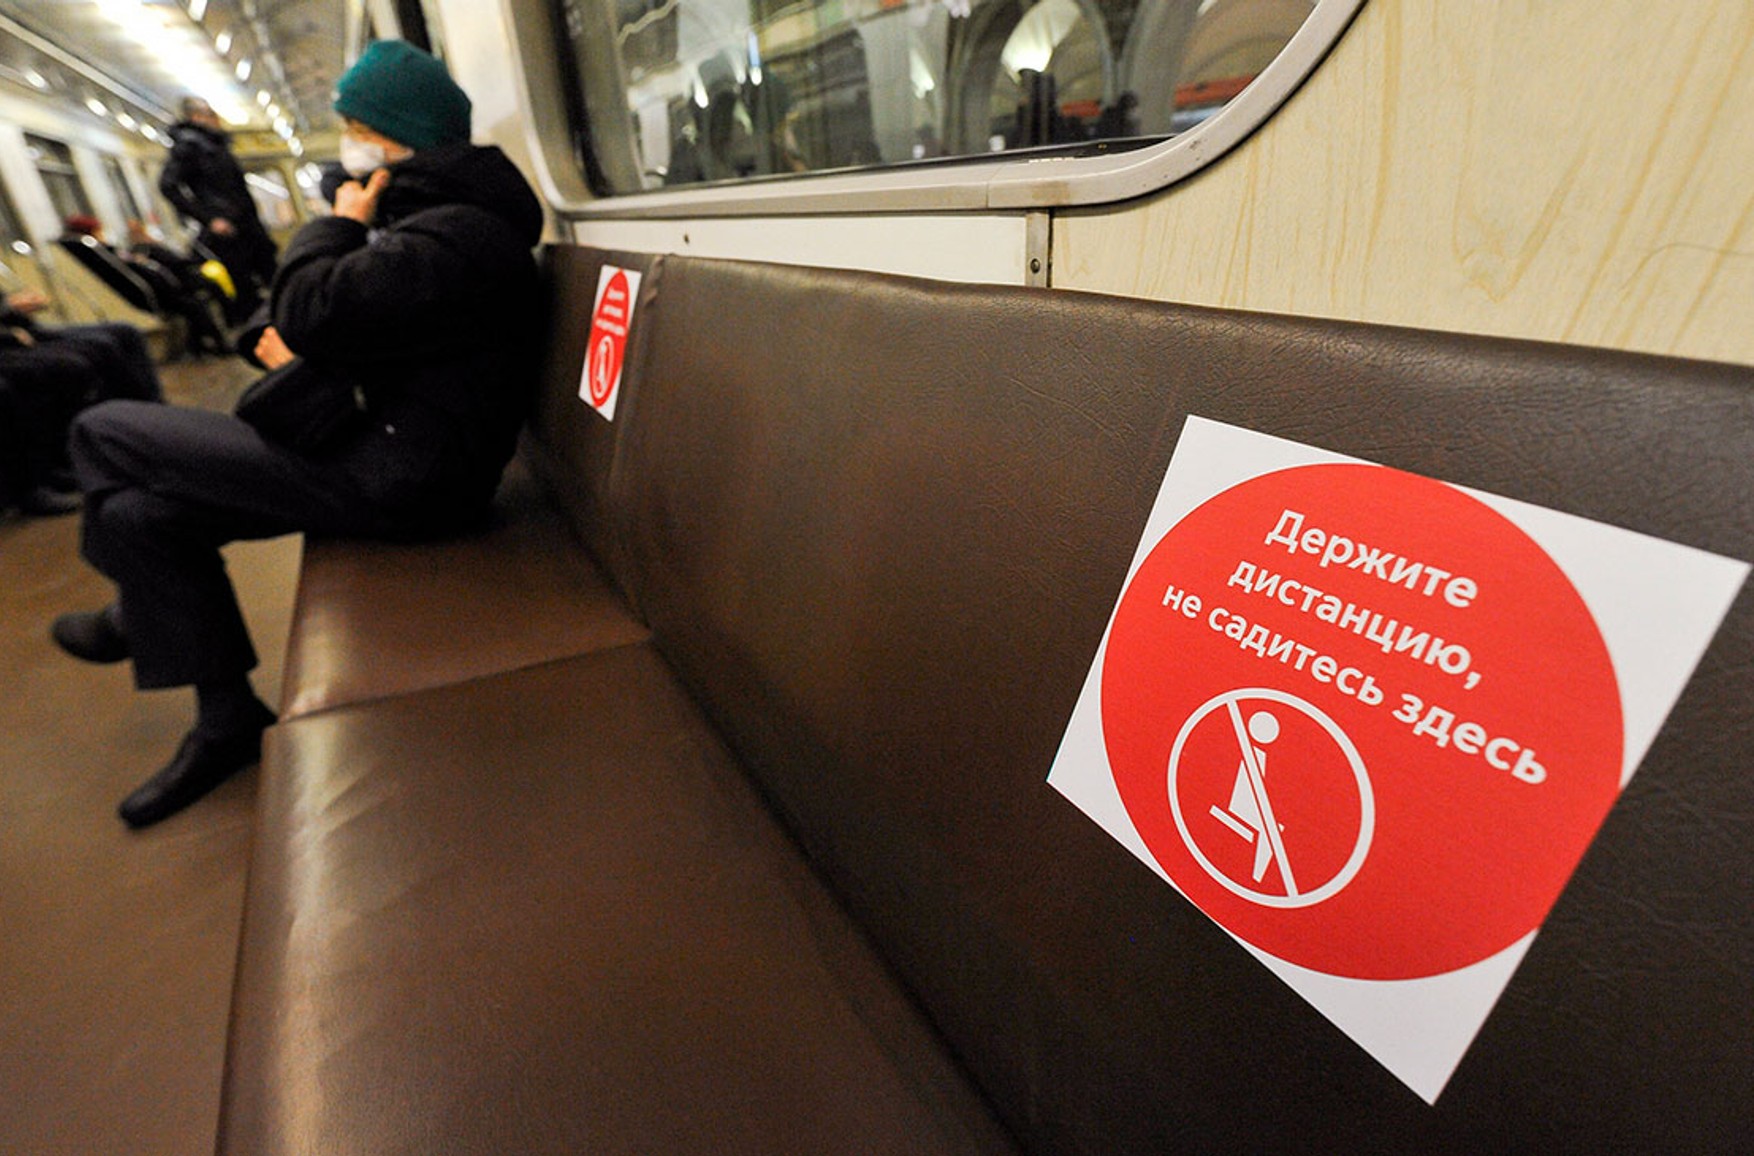 Пасажирів без засобів індивідуального захисту перестануть пускати в московський транспорт, перевірки будуть посилені